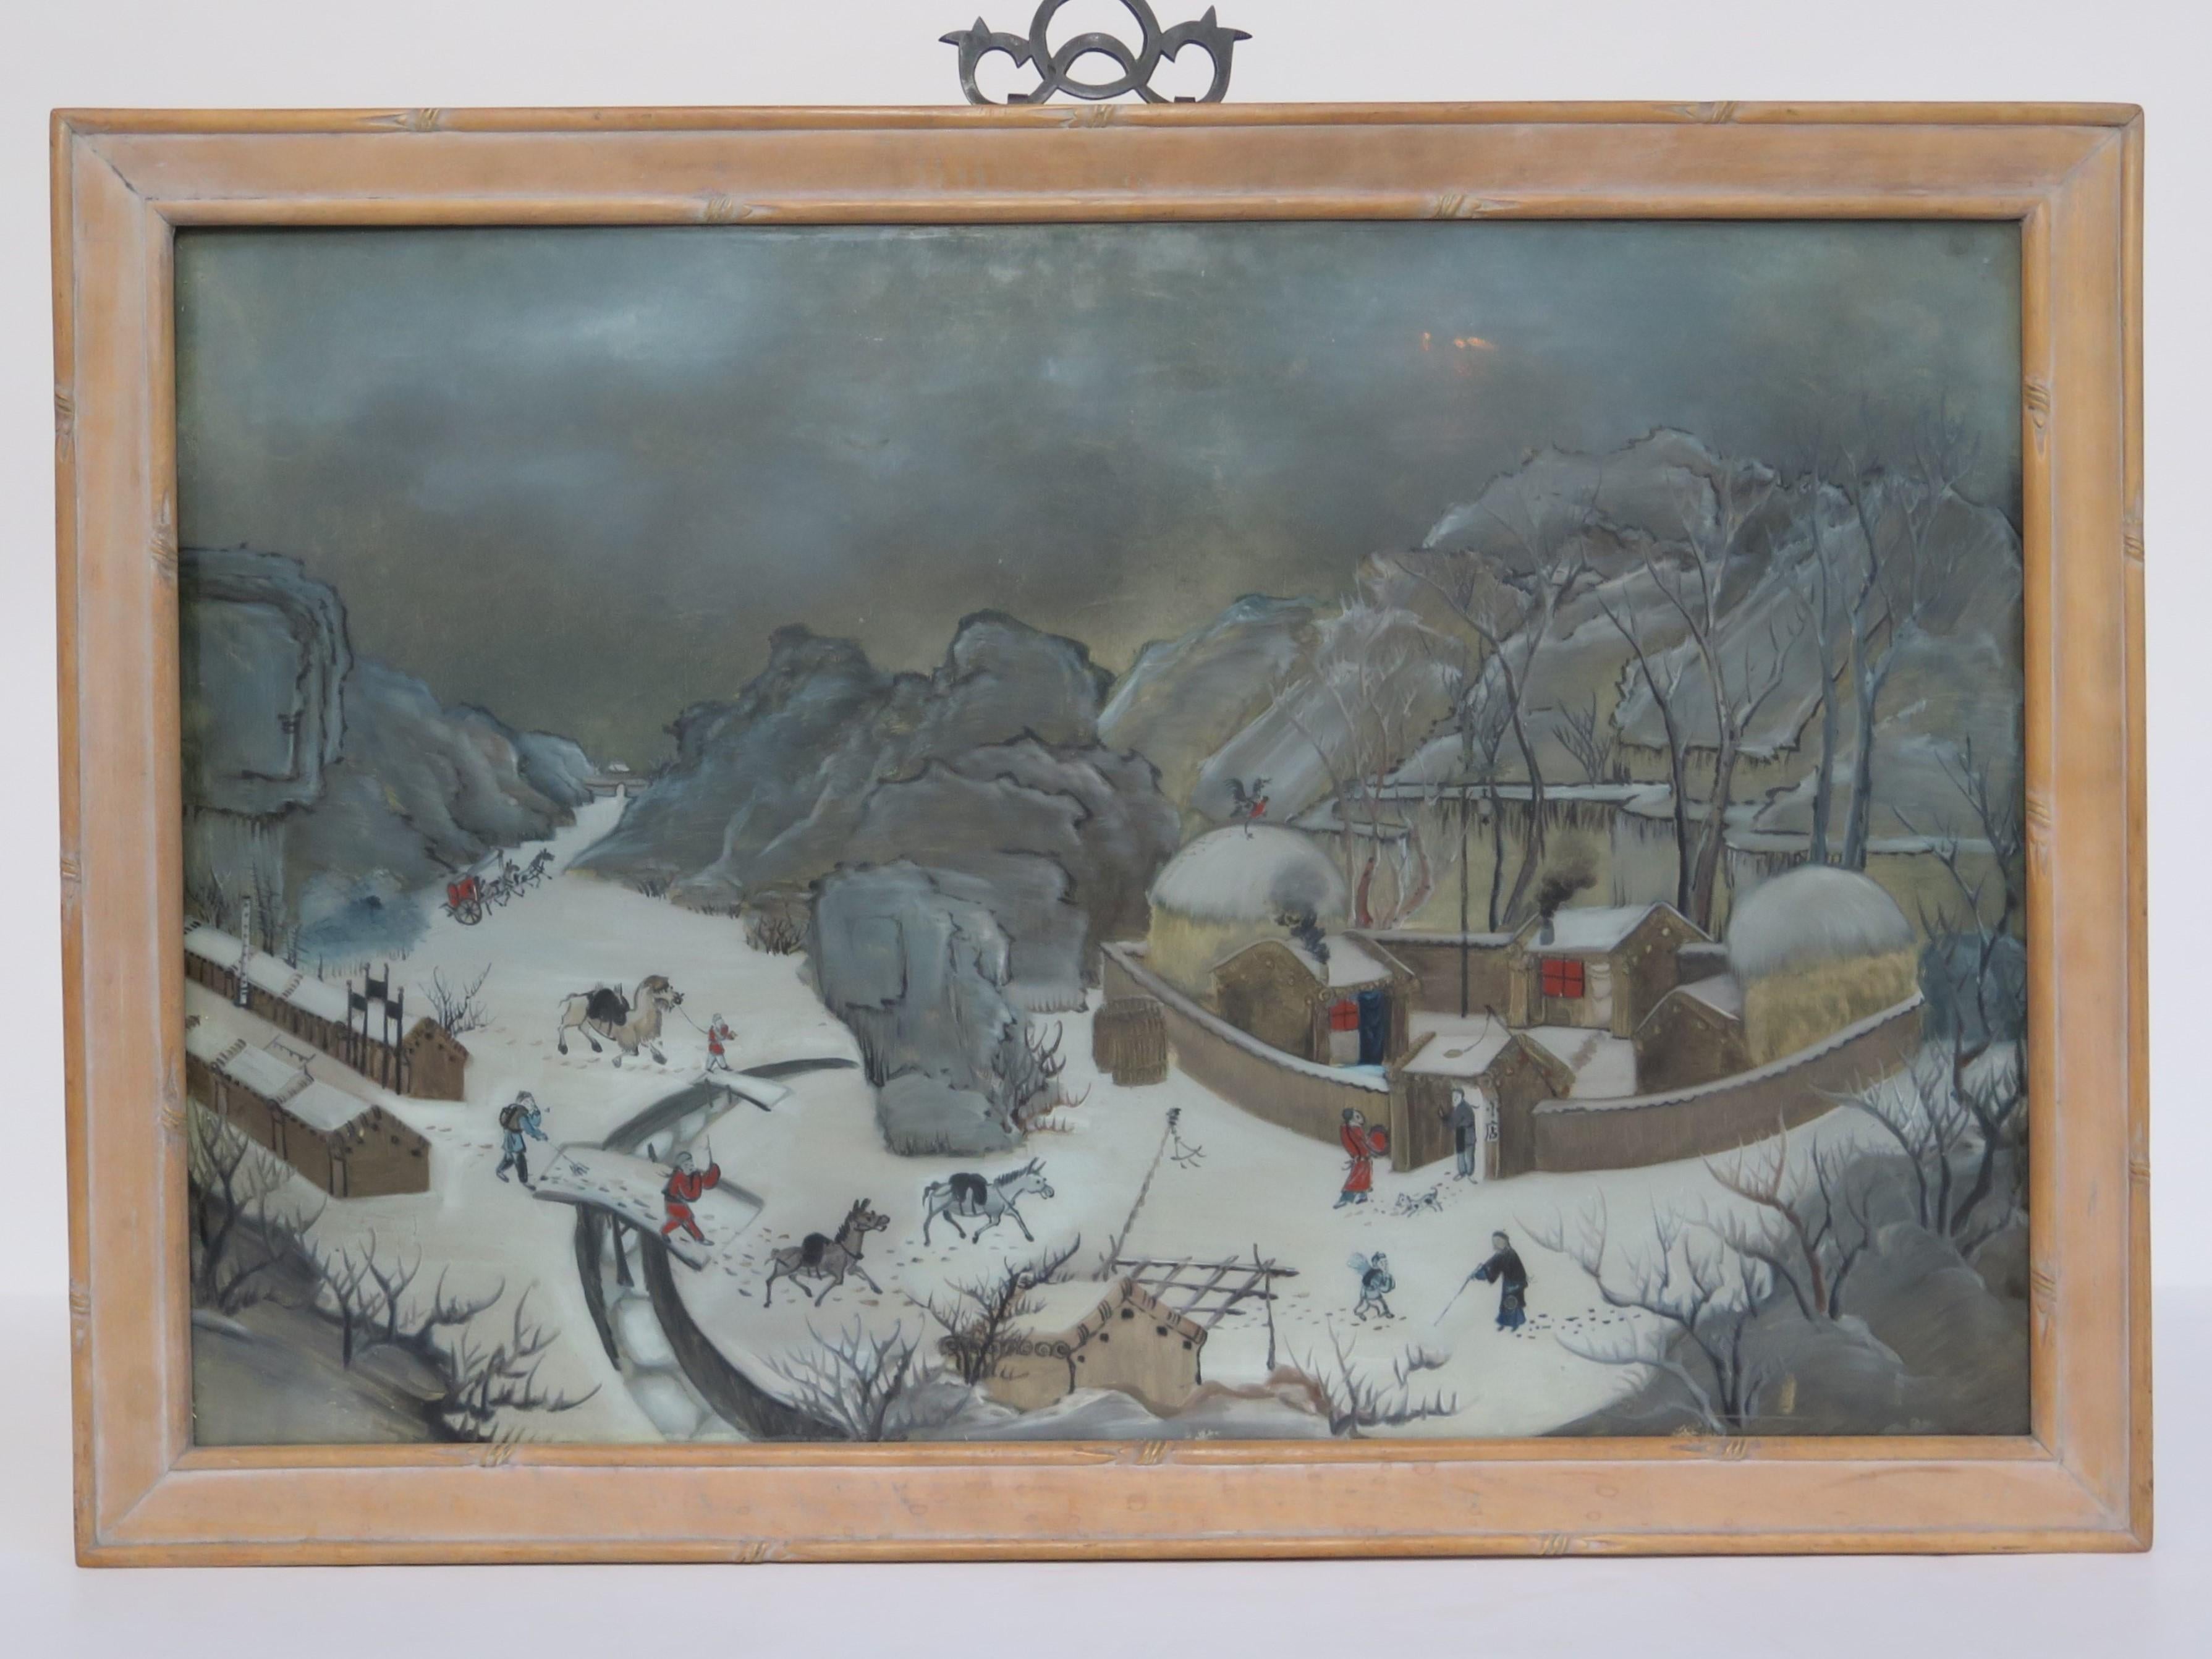 Eine chinesische Hinterglasmalerei aus dem 10. Eine Schneelandschaft mit Menschen und Häusern im Schnee.